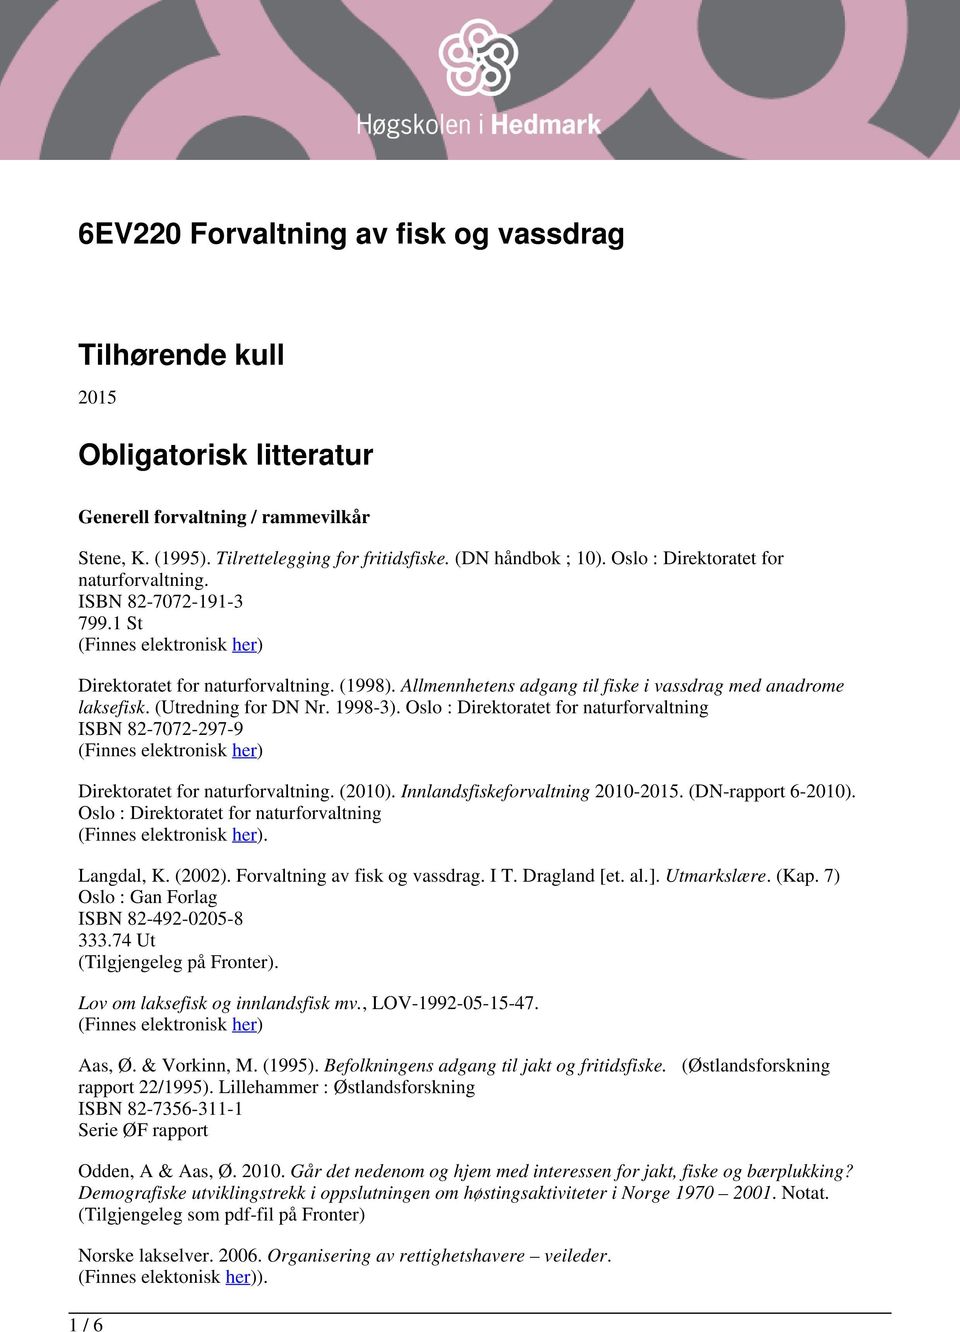 1998-3). Oslo : Direktoratet for naturforvaltning ISBN 82-7072-297-9 Direktoratet for naturforvaltning. (2010). Innlandsfiskeforvaltning 2010-2015. (DN-rapport 6-2010).